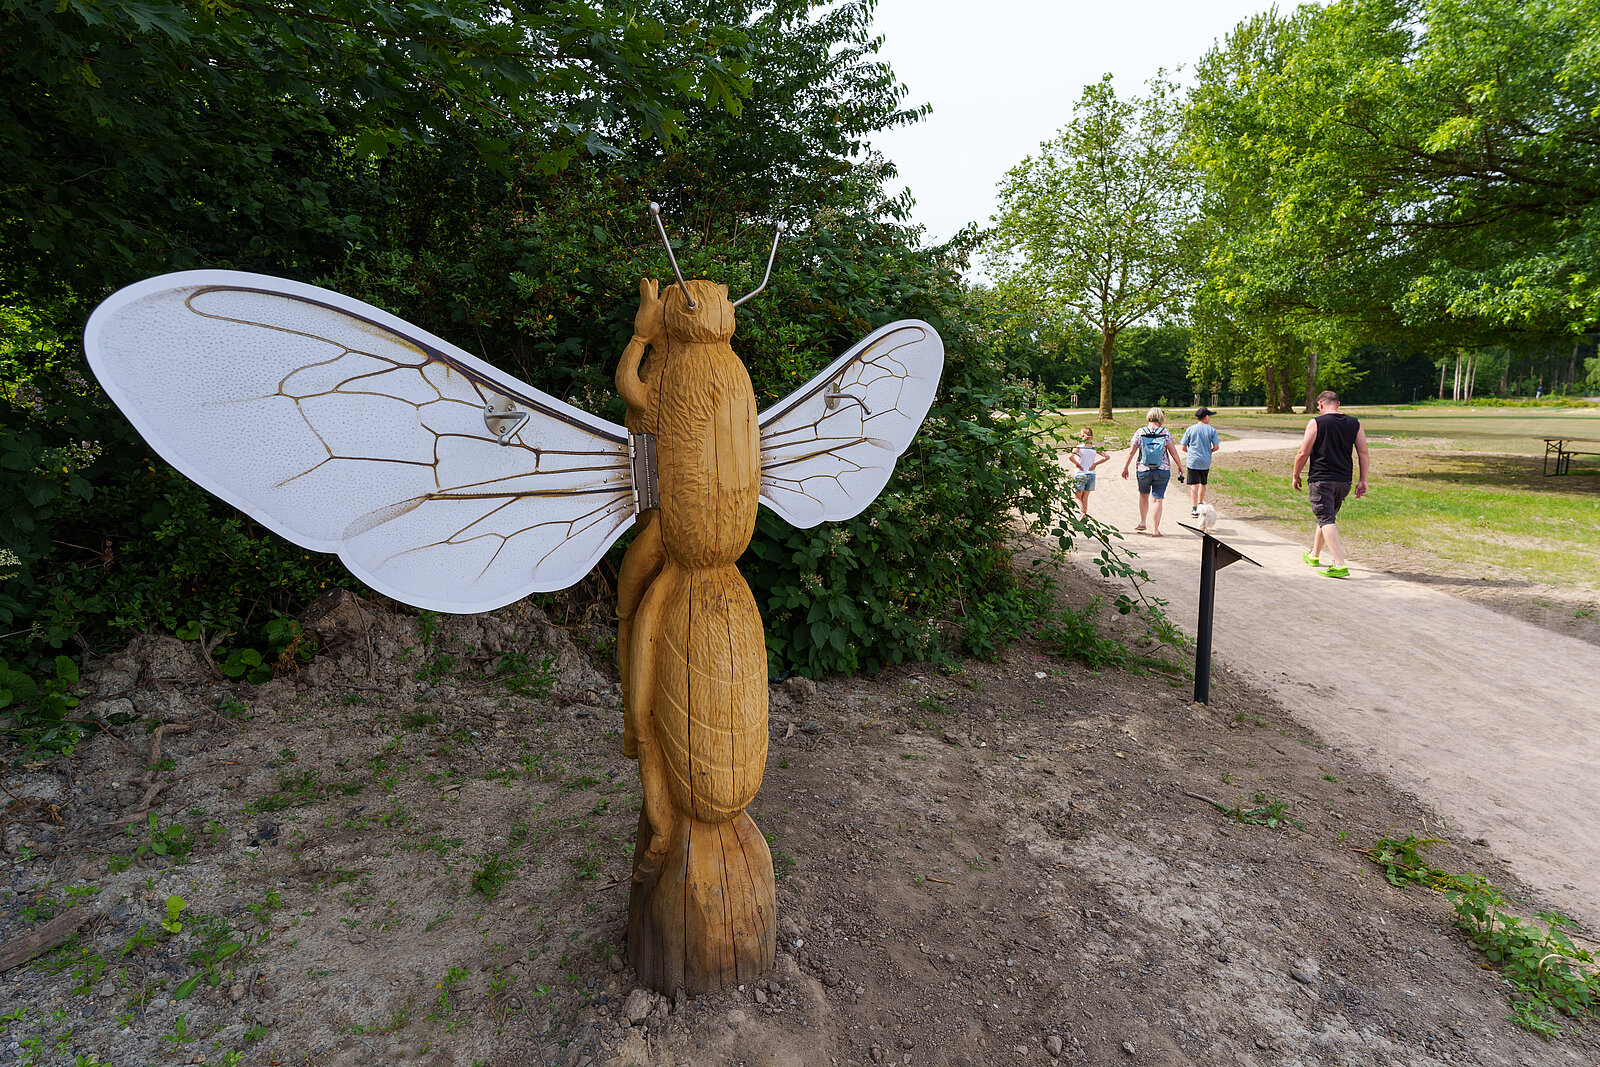 Auf dem Foto sieht man den Start des Bienen-Loops mit einer Holz-Skulptur einer Biene, deren Flügel Besuchende bewegen können.